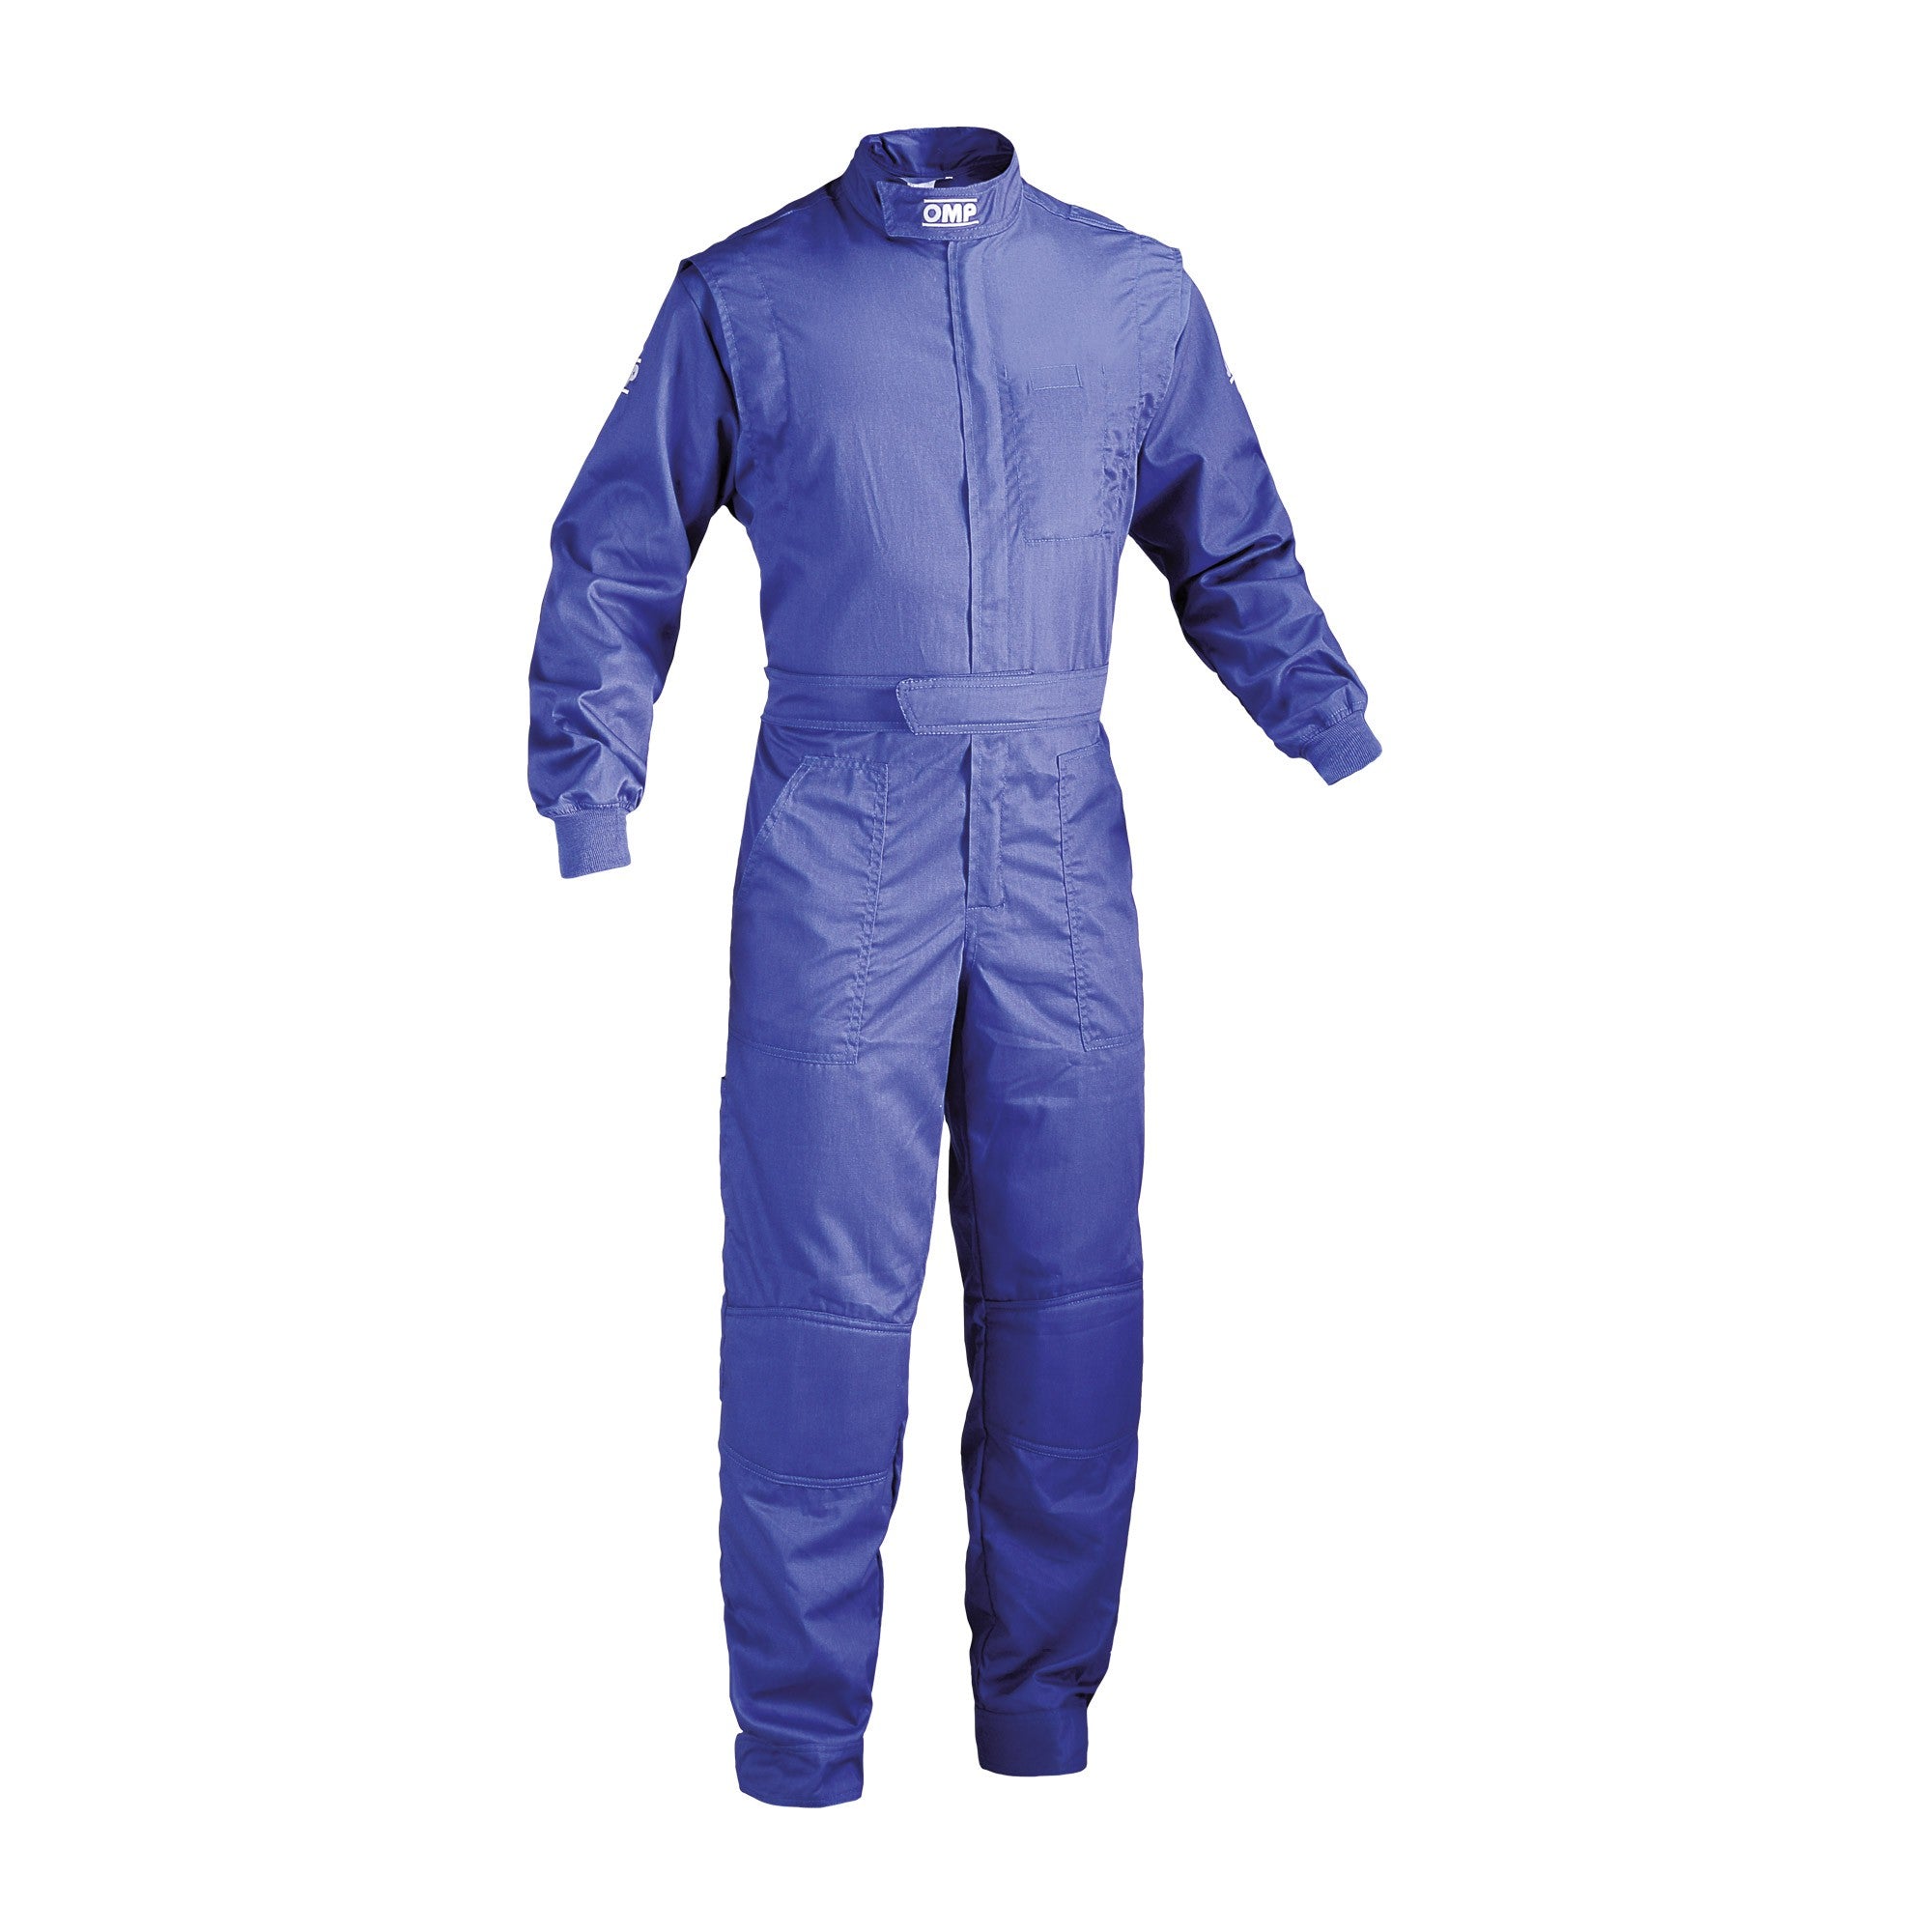 OMP NB0-1579-A01-041-52 (NB157904152) Mechanic suit SUMMER, blue, size 52 Photo-0 